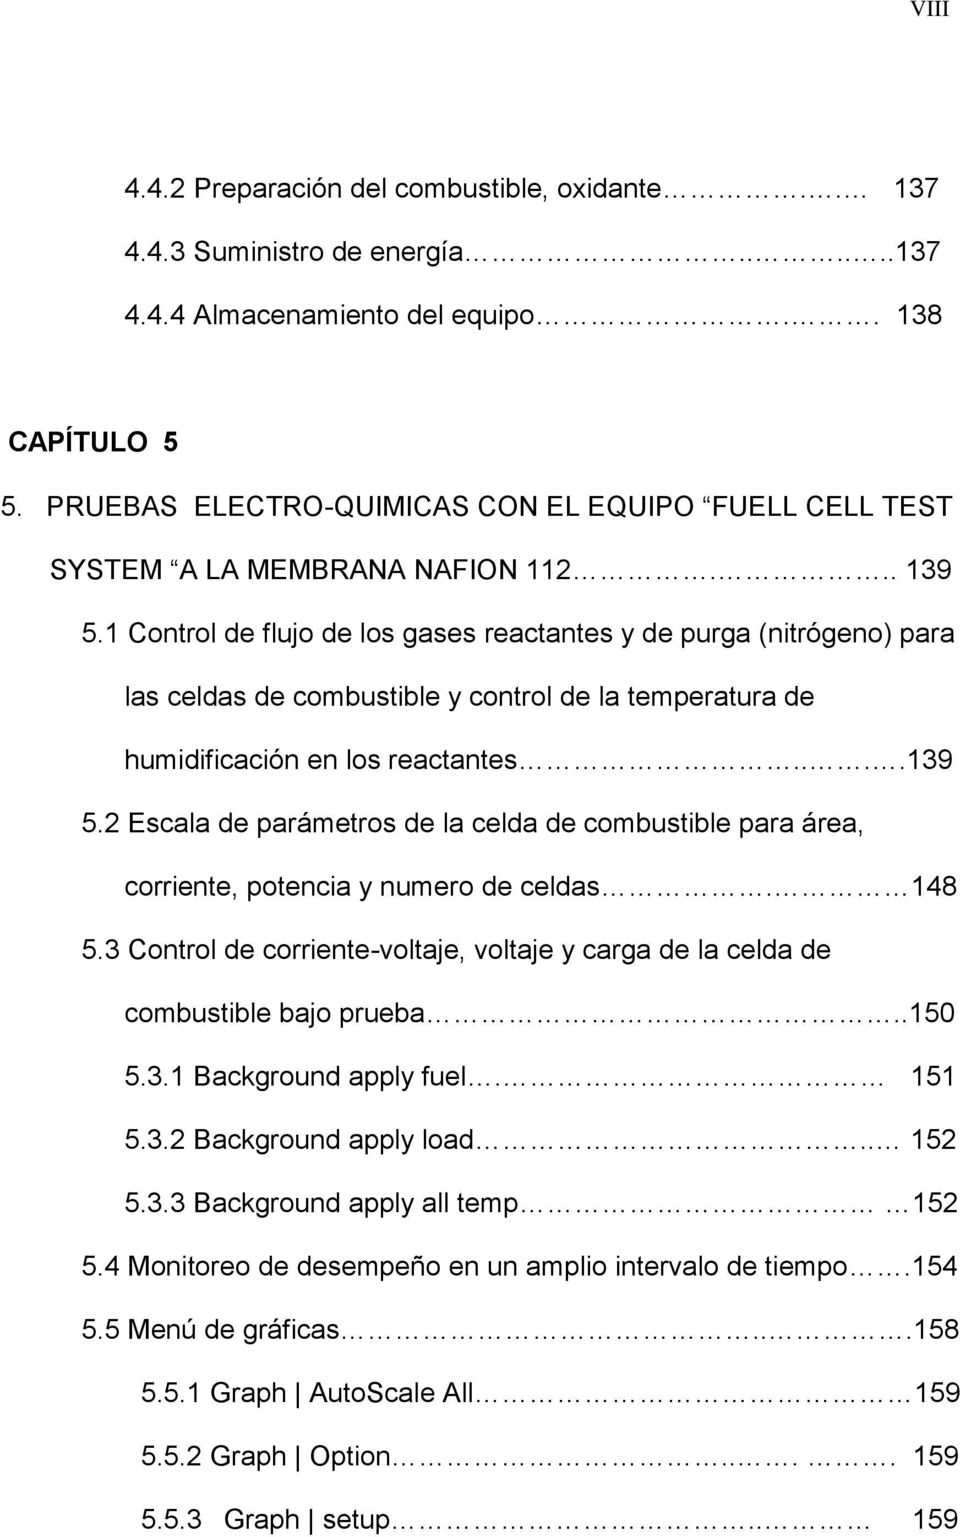 1 Control de flujo de los gases reactantes y de purga (nitrógeno) para las celdas de combustible y control de la temperatura de humidificación en los reactantes....139 5.